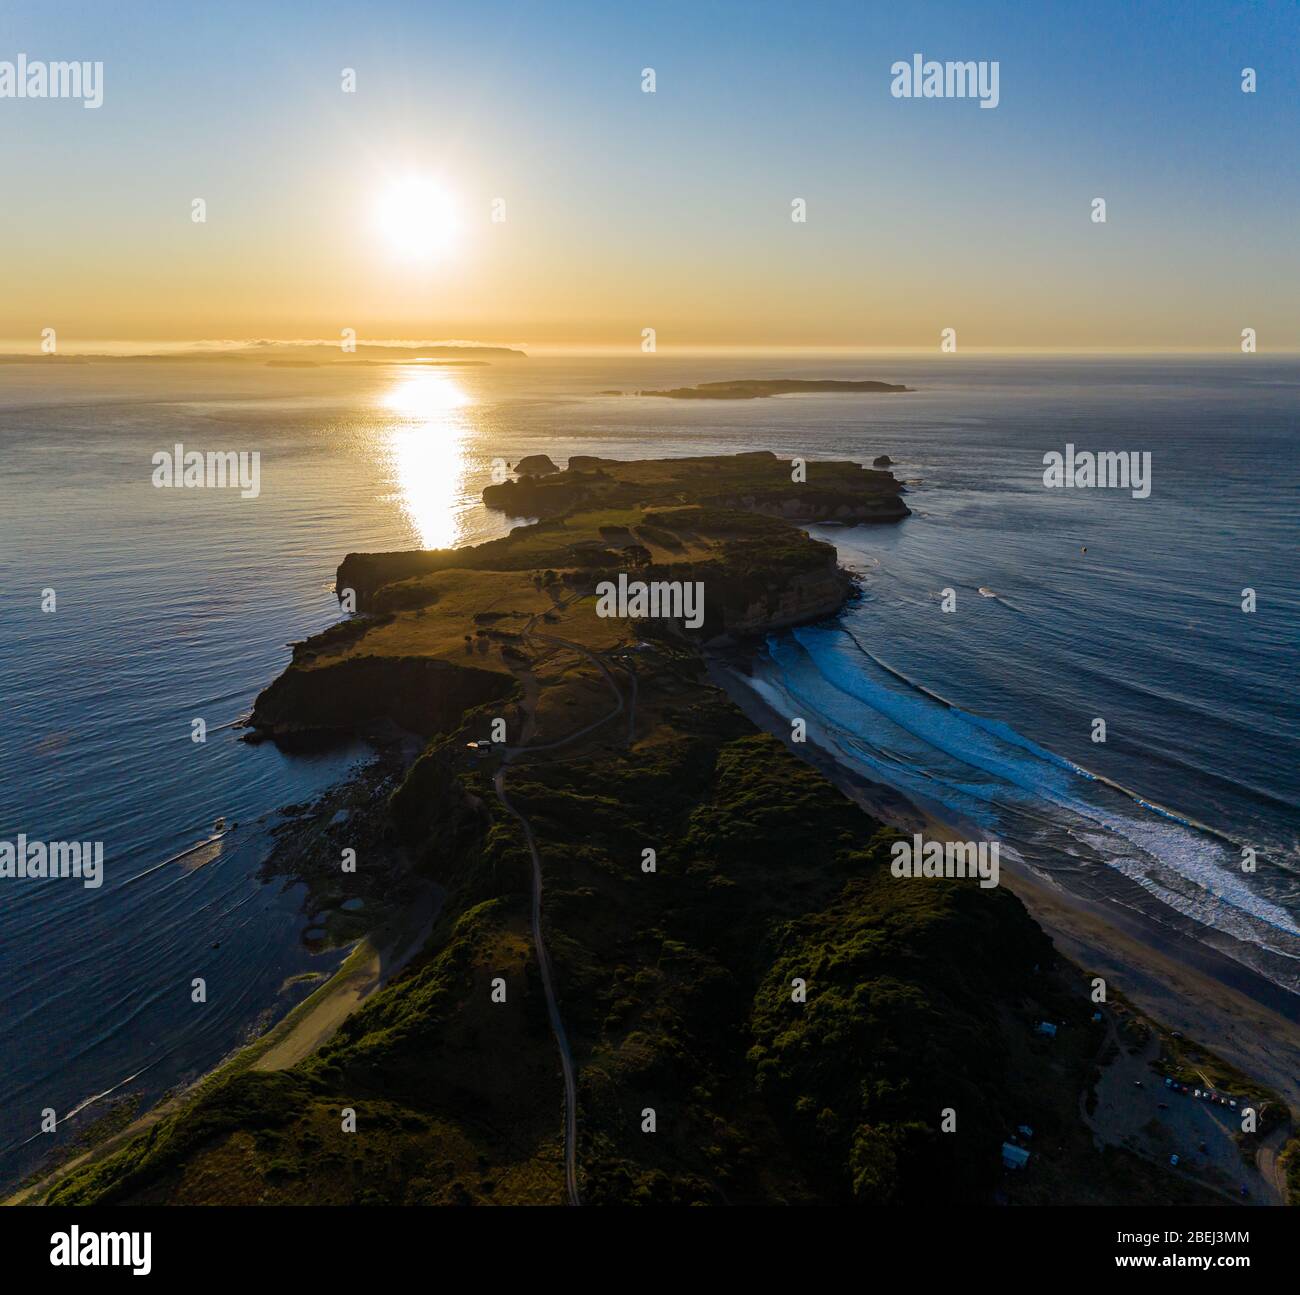 Luftaufnahme der südpazifischen Ozeanküste bei Sonnenuntergang Stockfoto